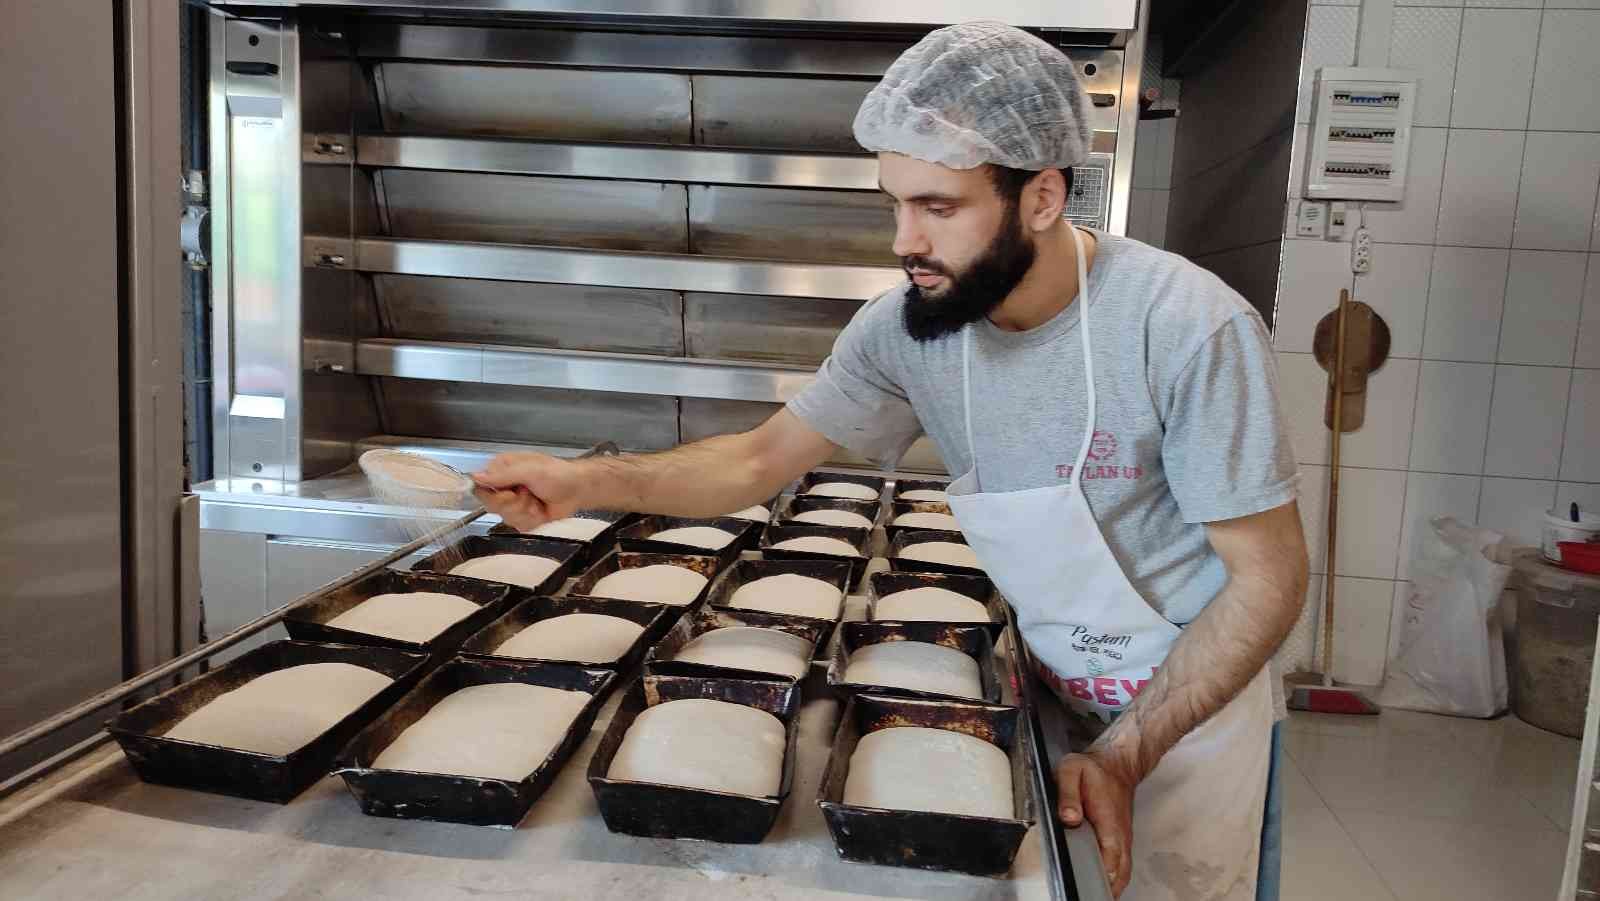 Şeker hastaları için zerdeçallı ekmek üretti, taleplere yetişemiyor #bursa